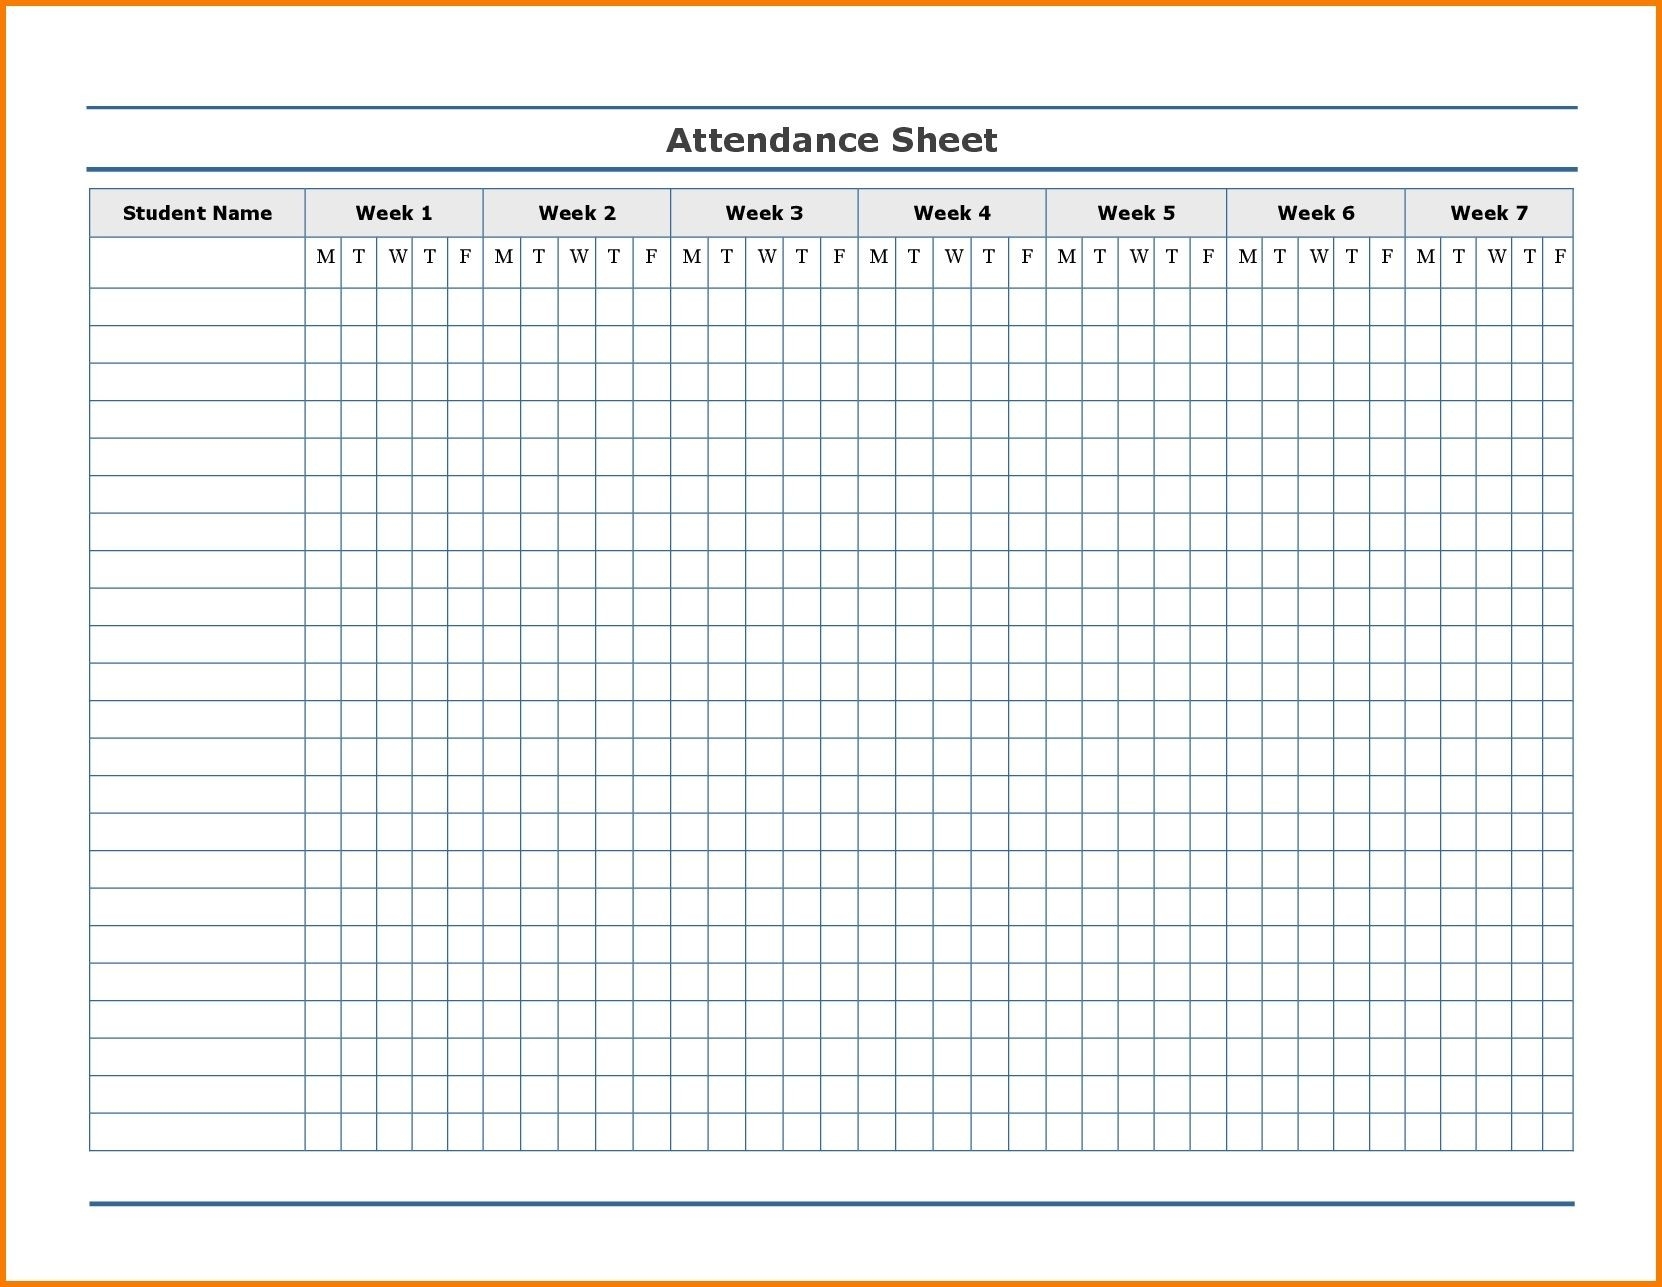 Free Employee Attendance Calendar | Employee Tracker  Printable Employee Attendance Calendar Template